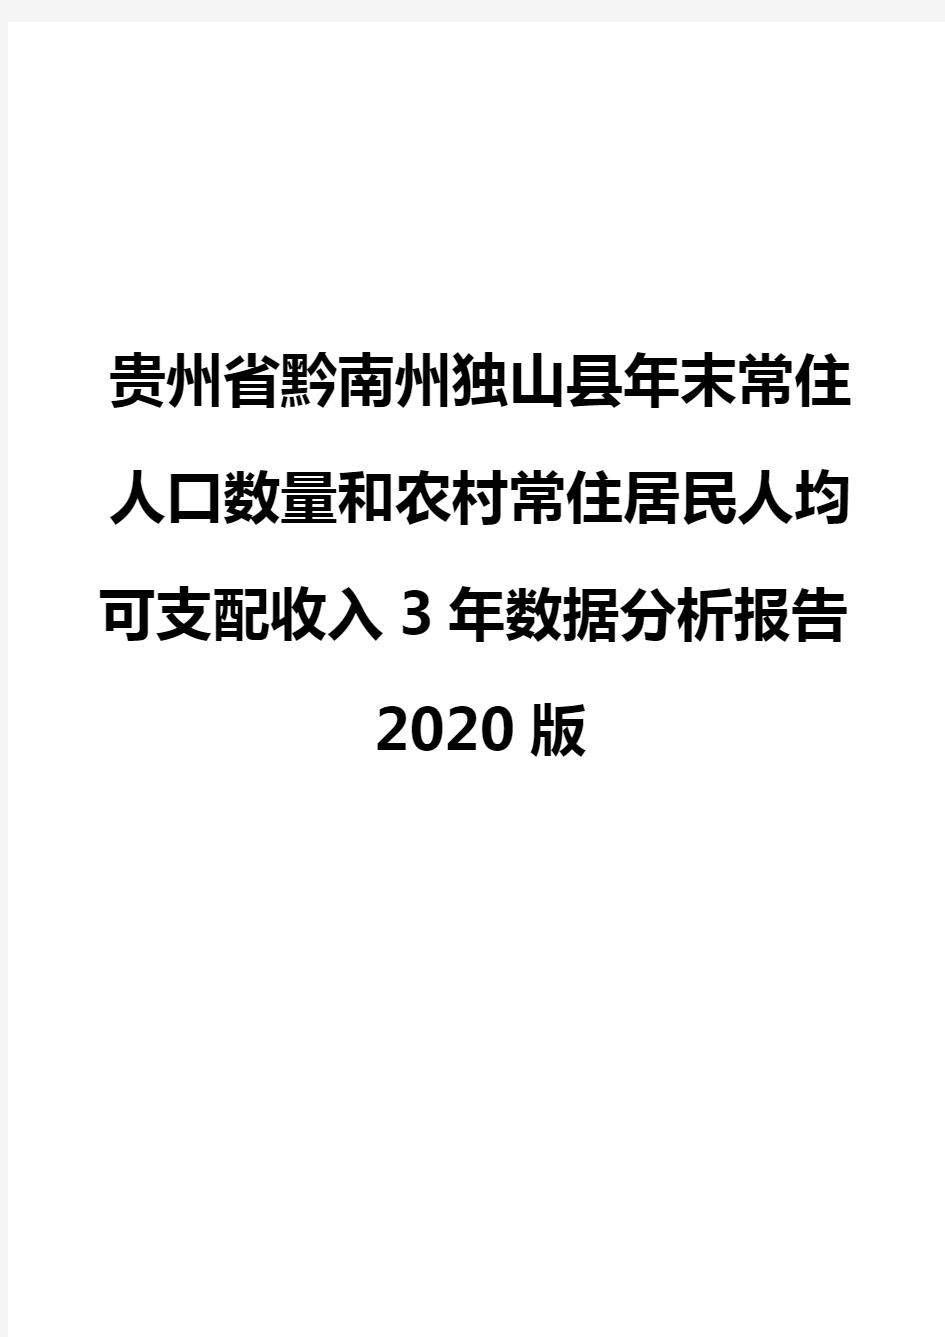 贵州省黔南州独山县年末常住人口数量和农村常住居民人均可支配收入3年数据分析报告2020版